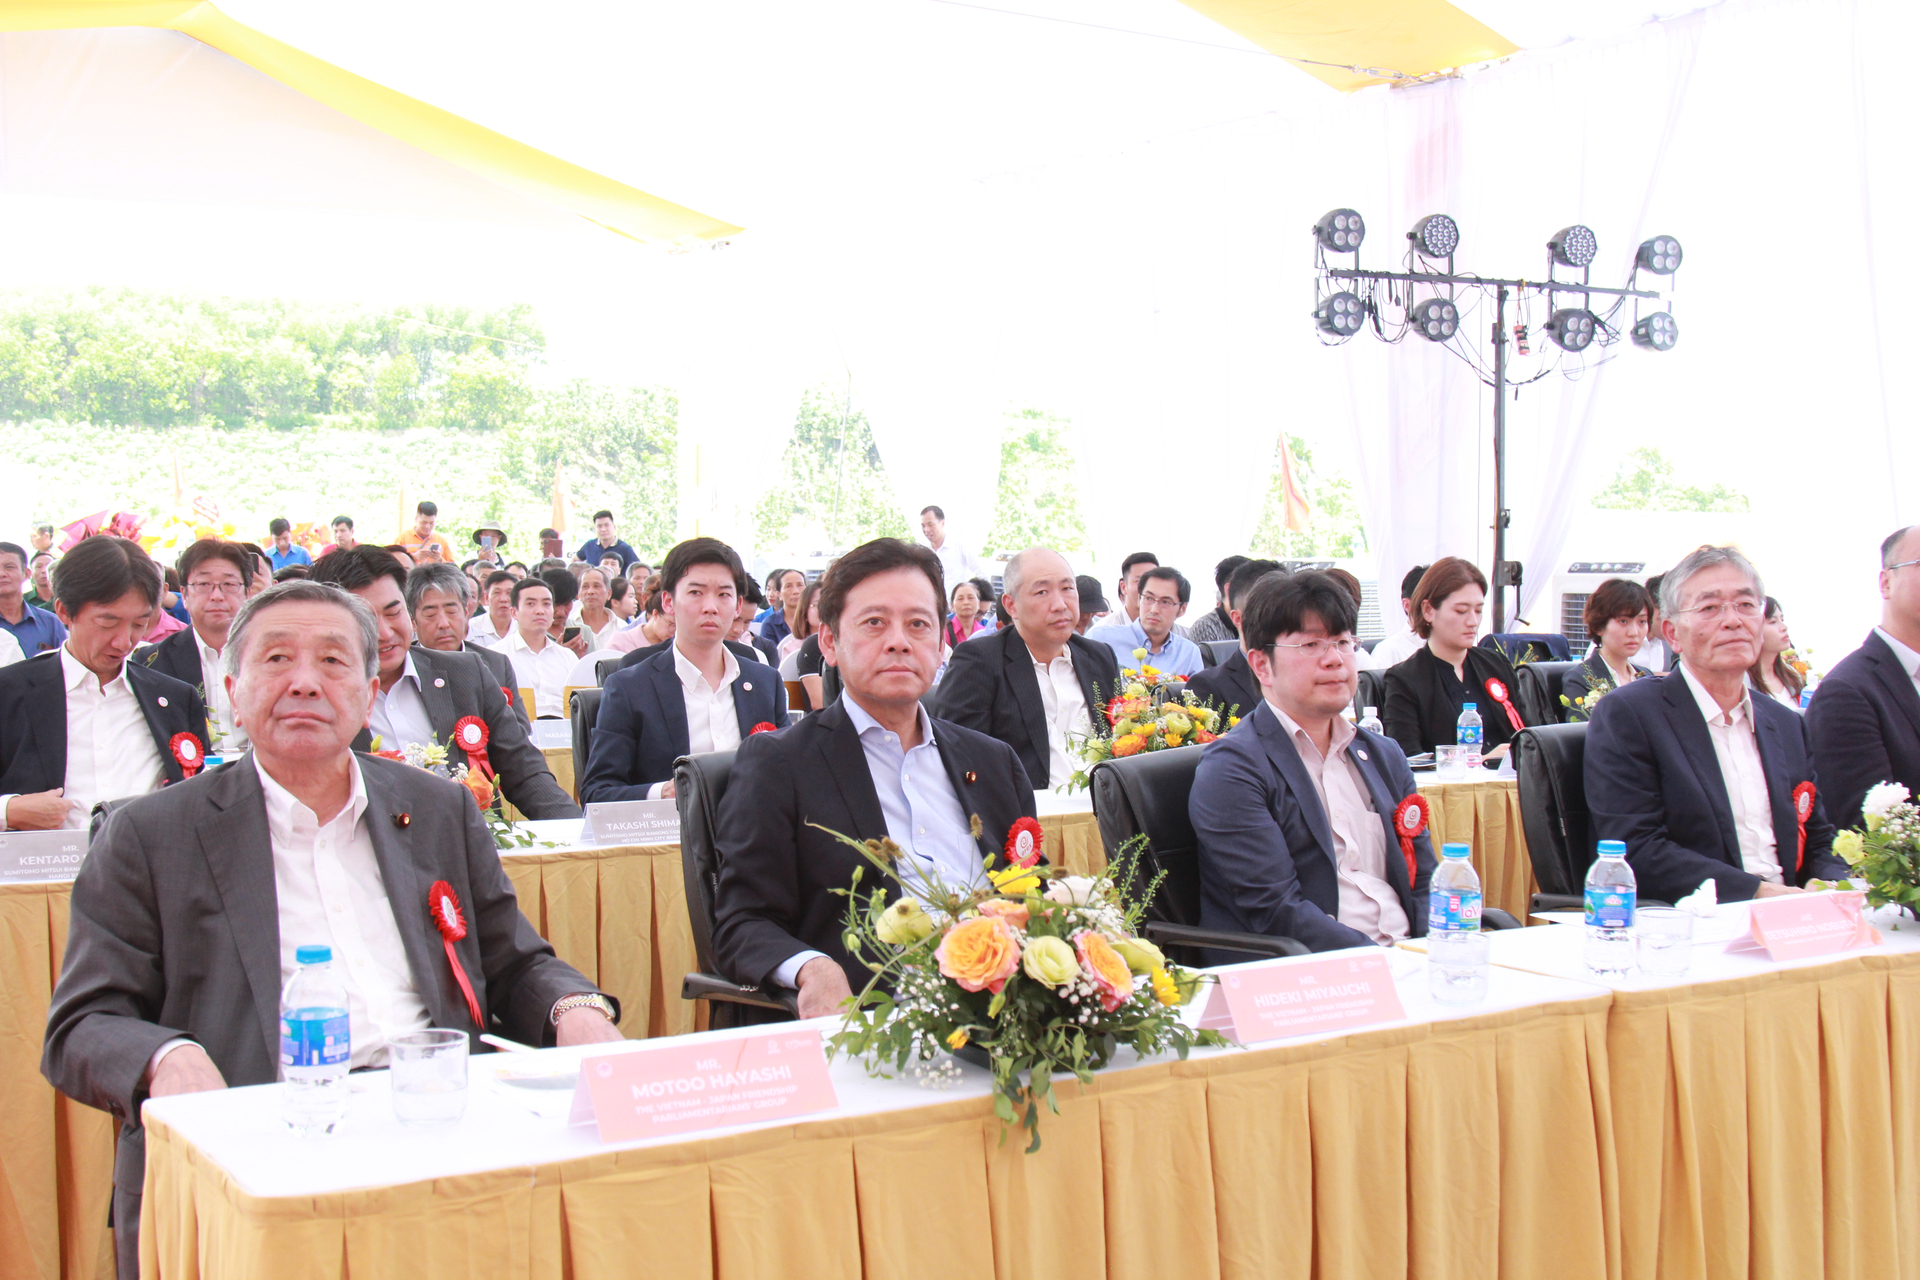 Liên minh Nghị sĩ Hữu nghị Nhật Bản - Việt Nam và các đối tác Nhật Bản tham dự Lễ khởi công. Ảnh: Thanh Tiến.